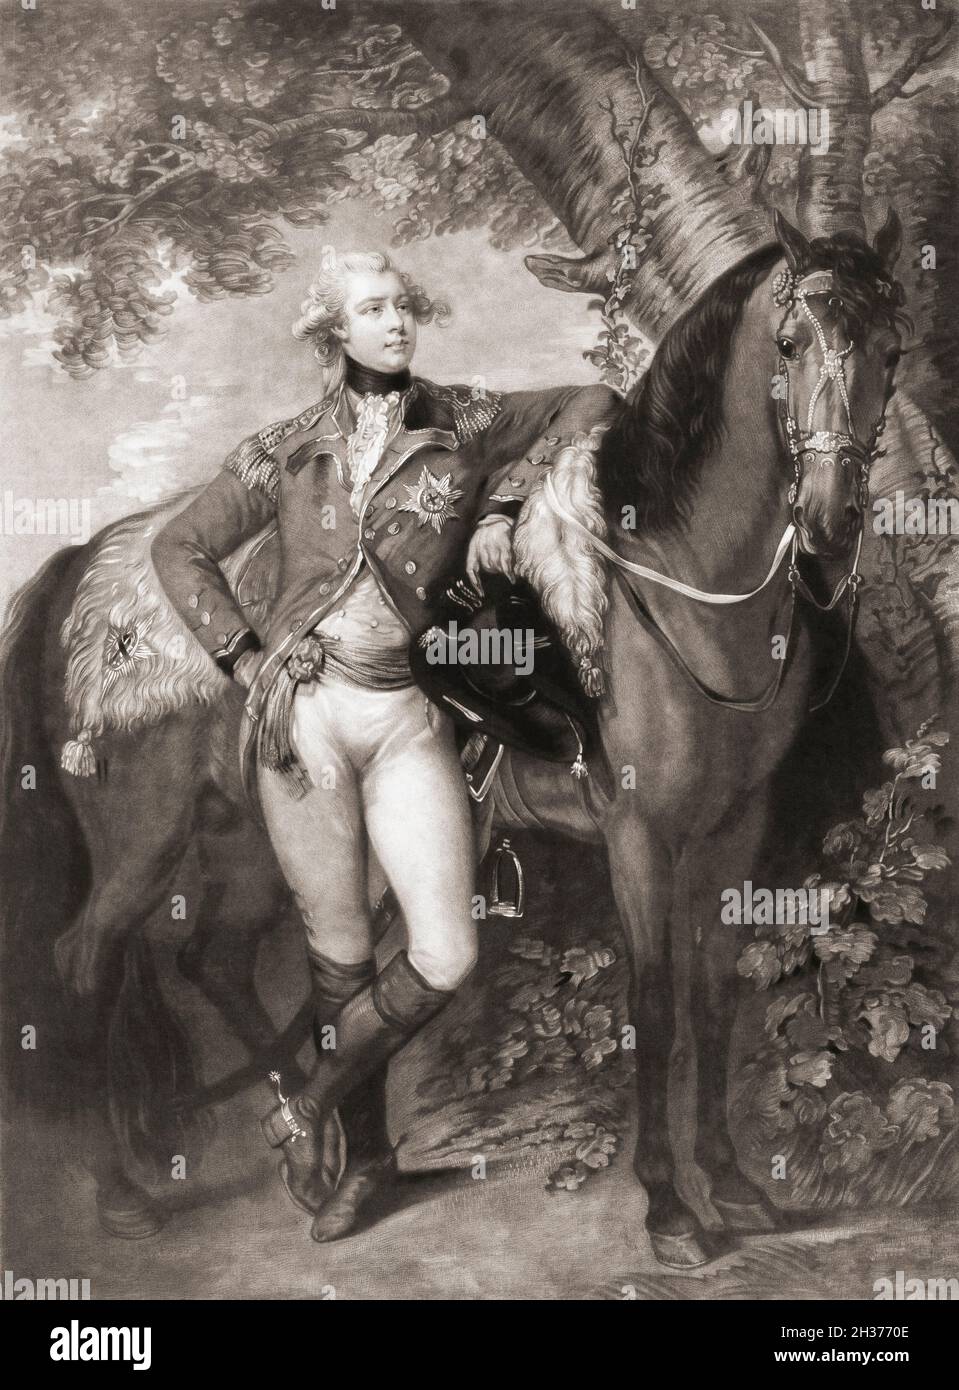 König George IV. Als Prinz von Wales. König Georg IV., 1762 - 1830, König des Vereinigten Königreichs von Großbritannien und Irland und König von Hannover. Nach einem Gemälde von Thomas Gainsborough. Stockfoto